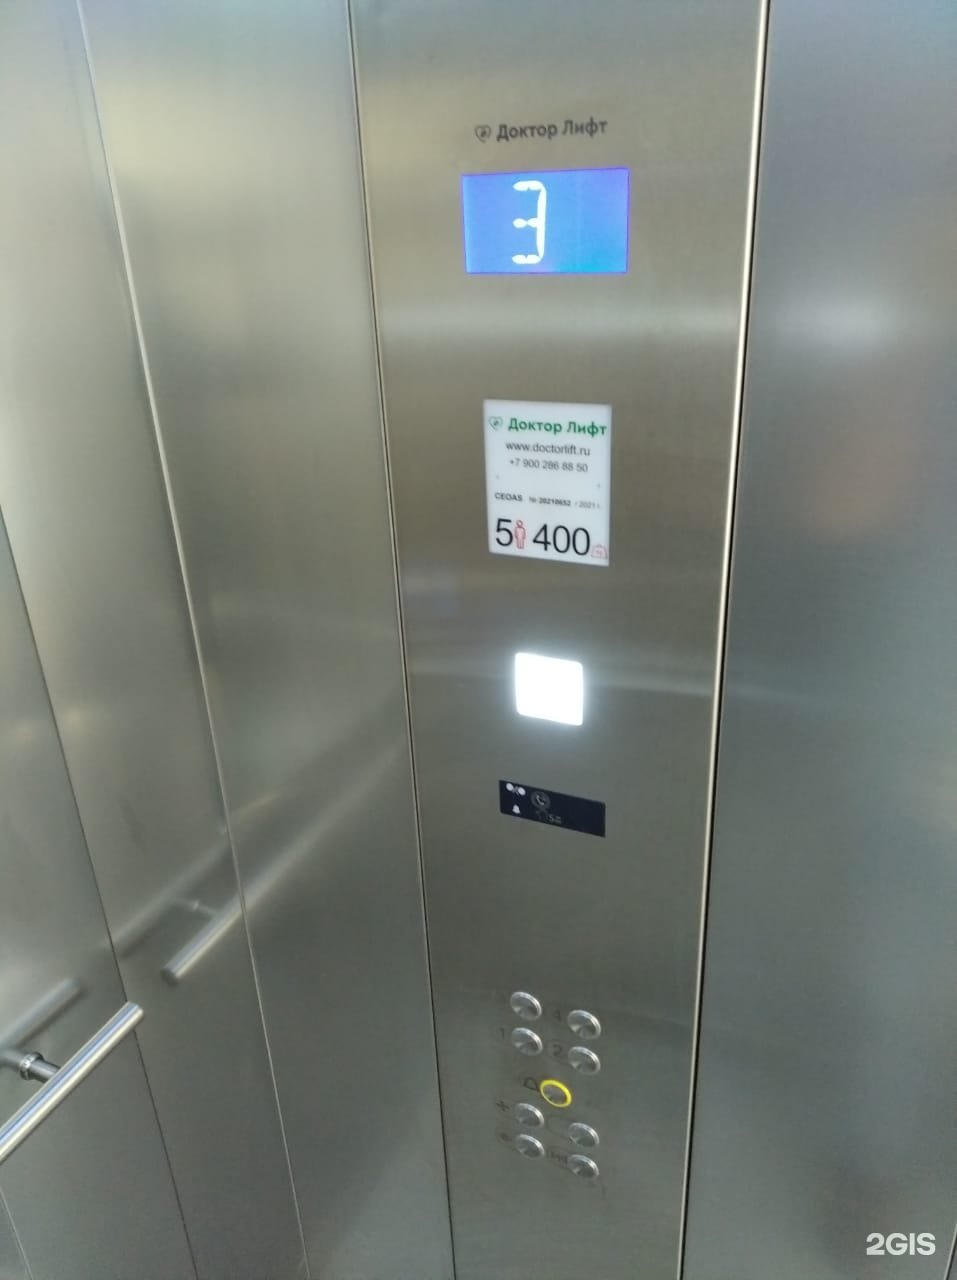 Доктор лифт Сочи. Сервисный лифт. Номер лифтовой компании. Врач в лифте. Телефон лифтовой службы